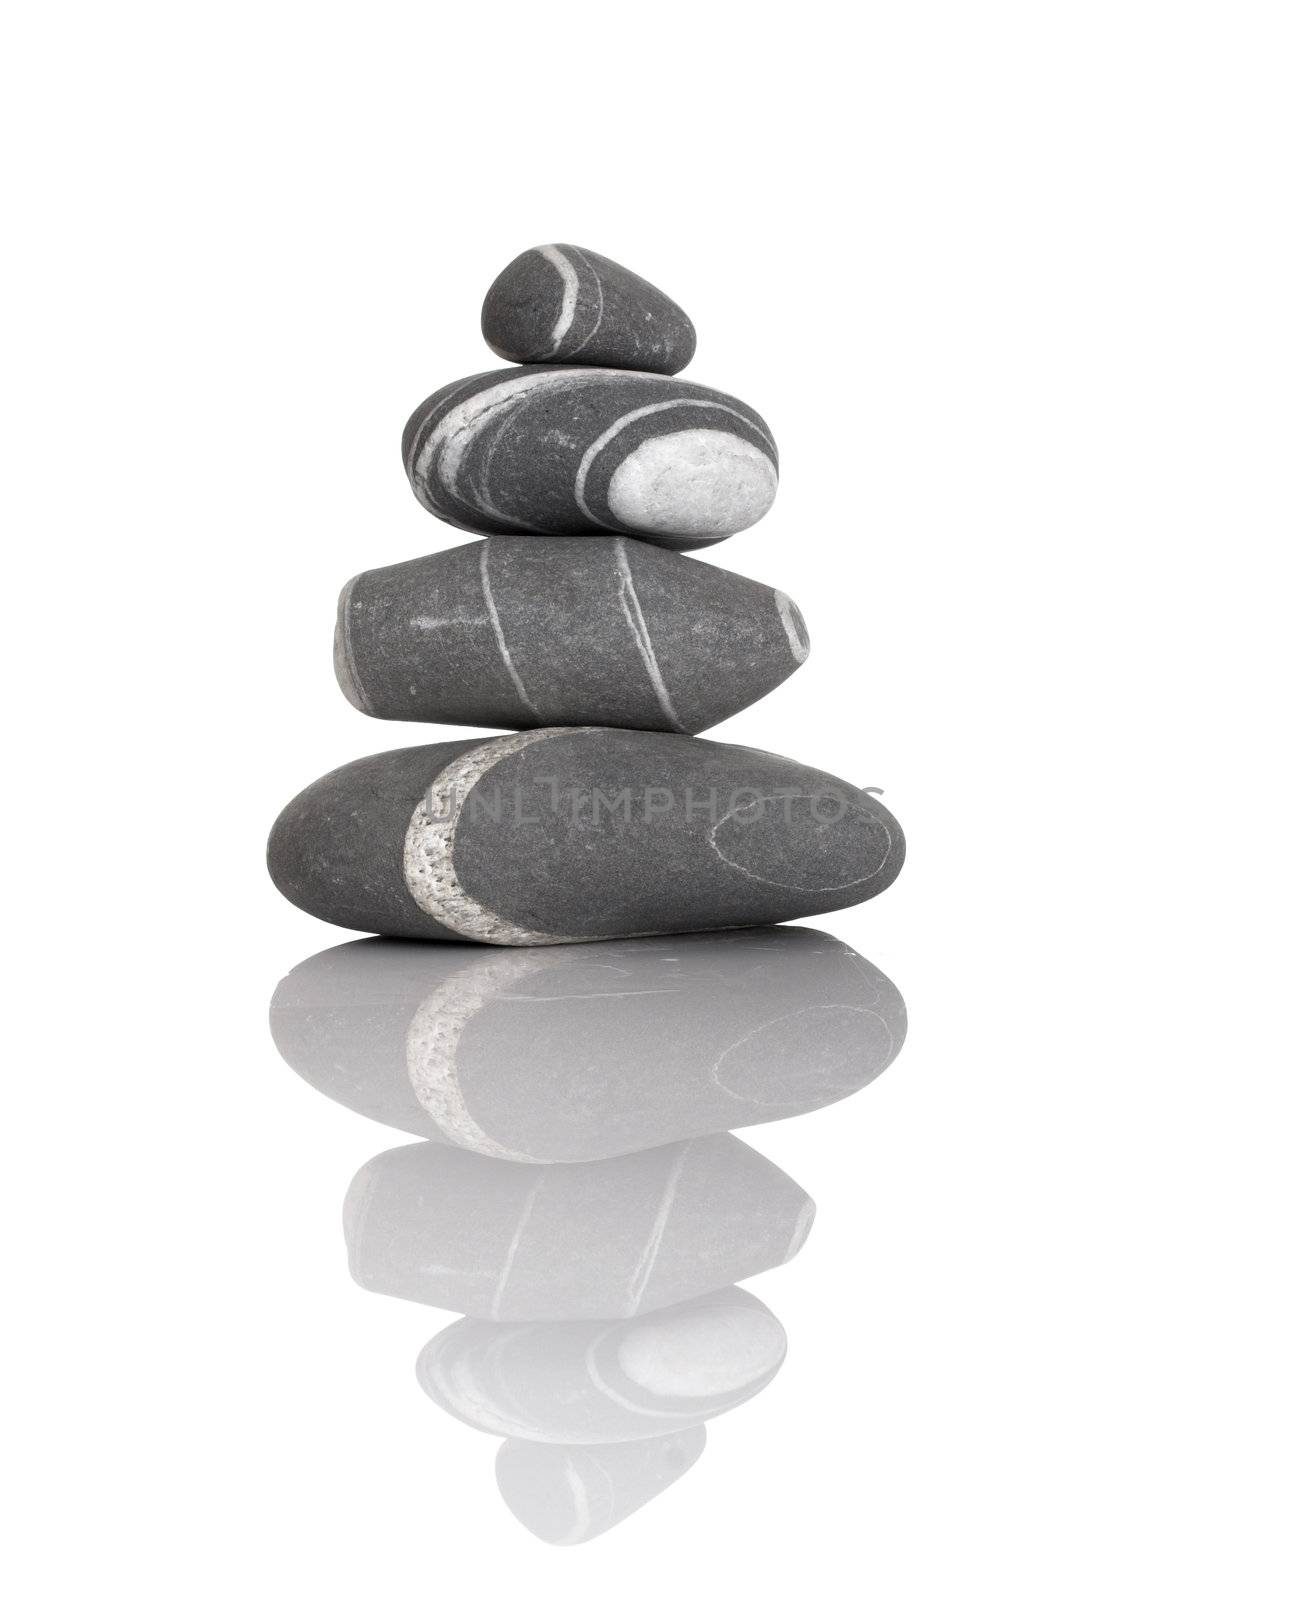 Balancing stones by Iko